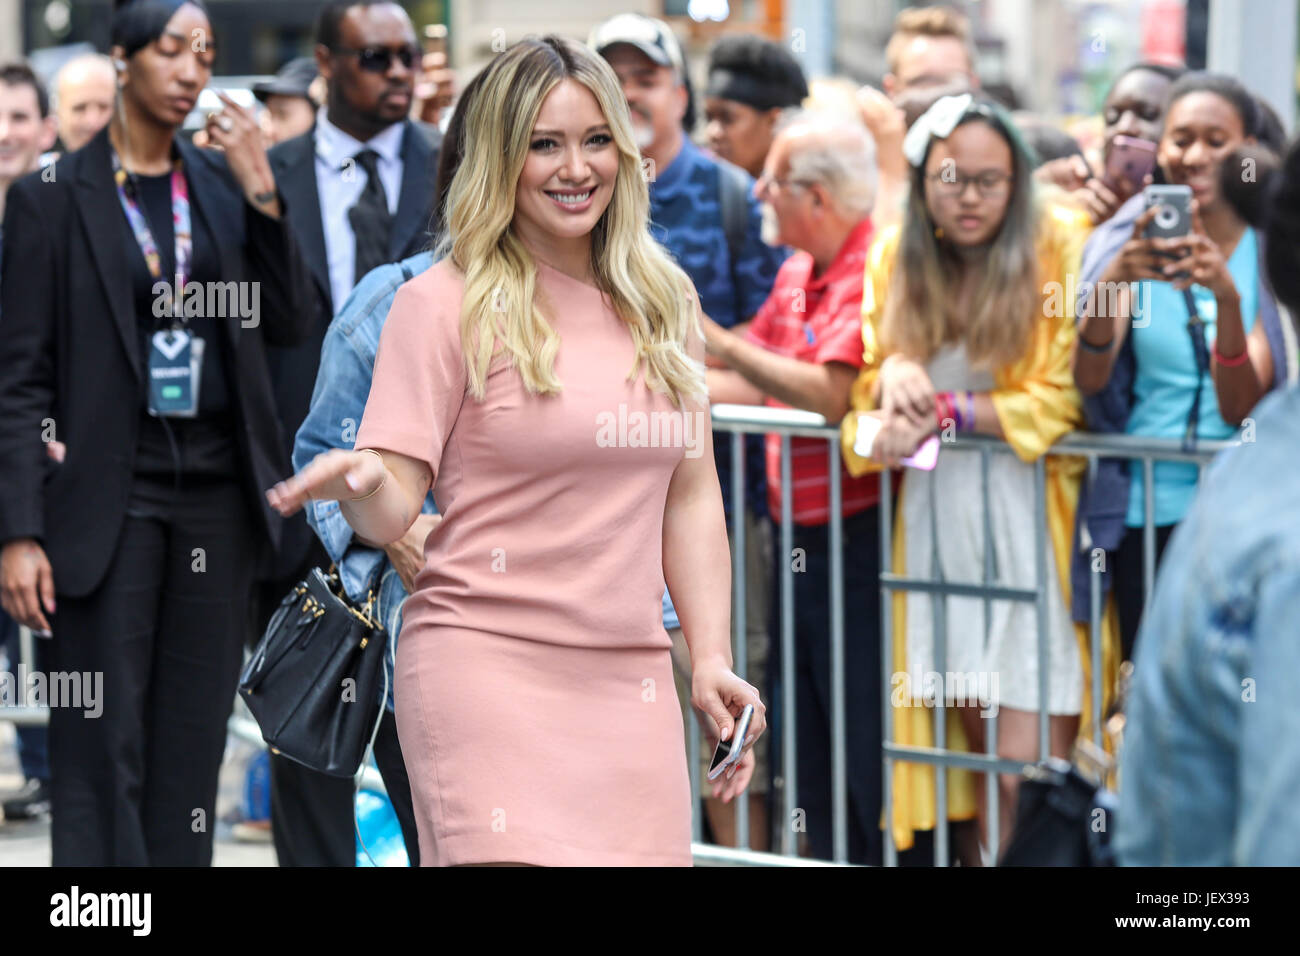 New York, États-Unis. 27 Juin, 2017. Actrice américaine Hilary Duff est vu  à Soho sur l'île de Manhattan à New York le mardi 27 juin. Brésil : Crédit  Photo Presse/Alamy Live News